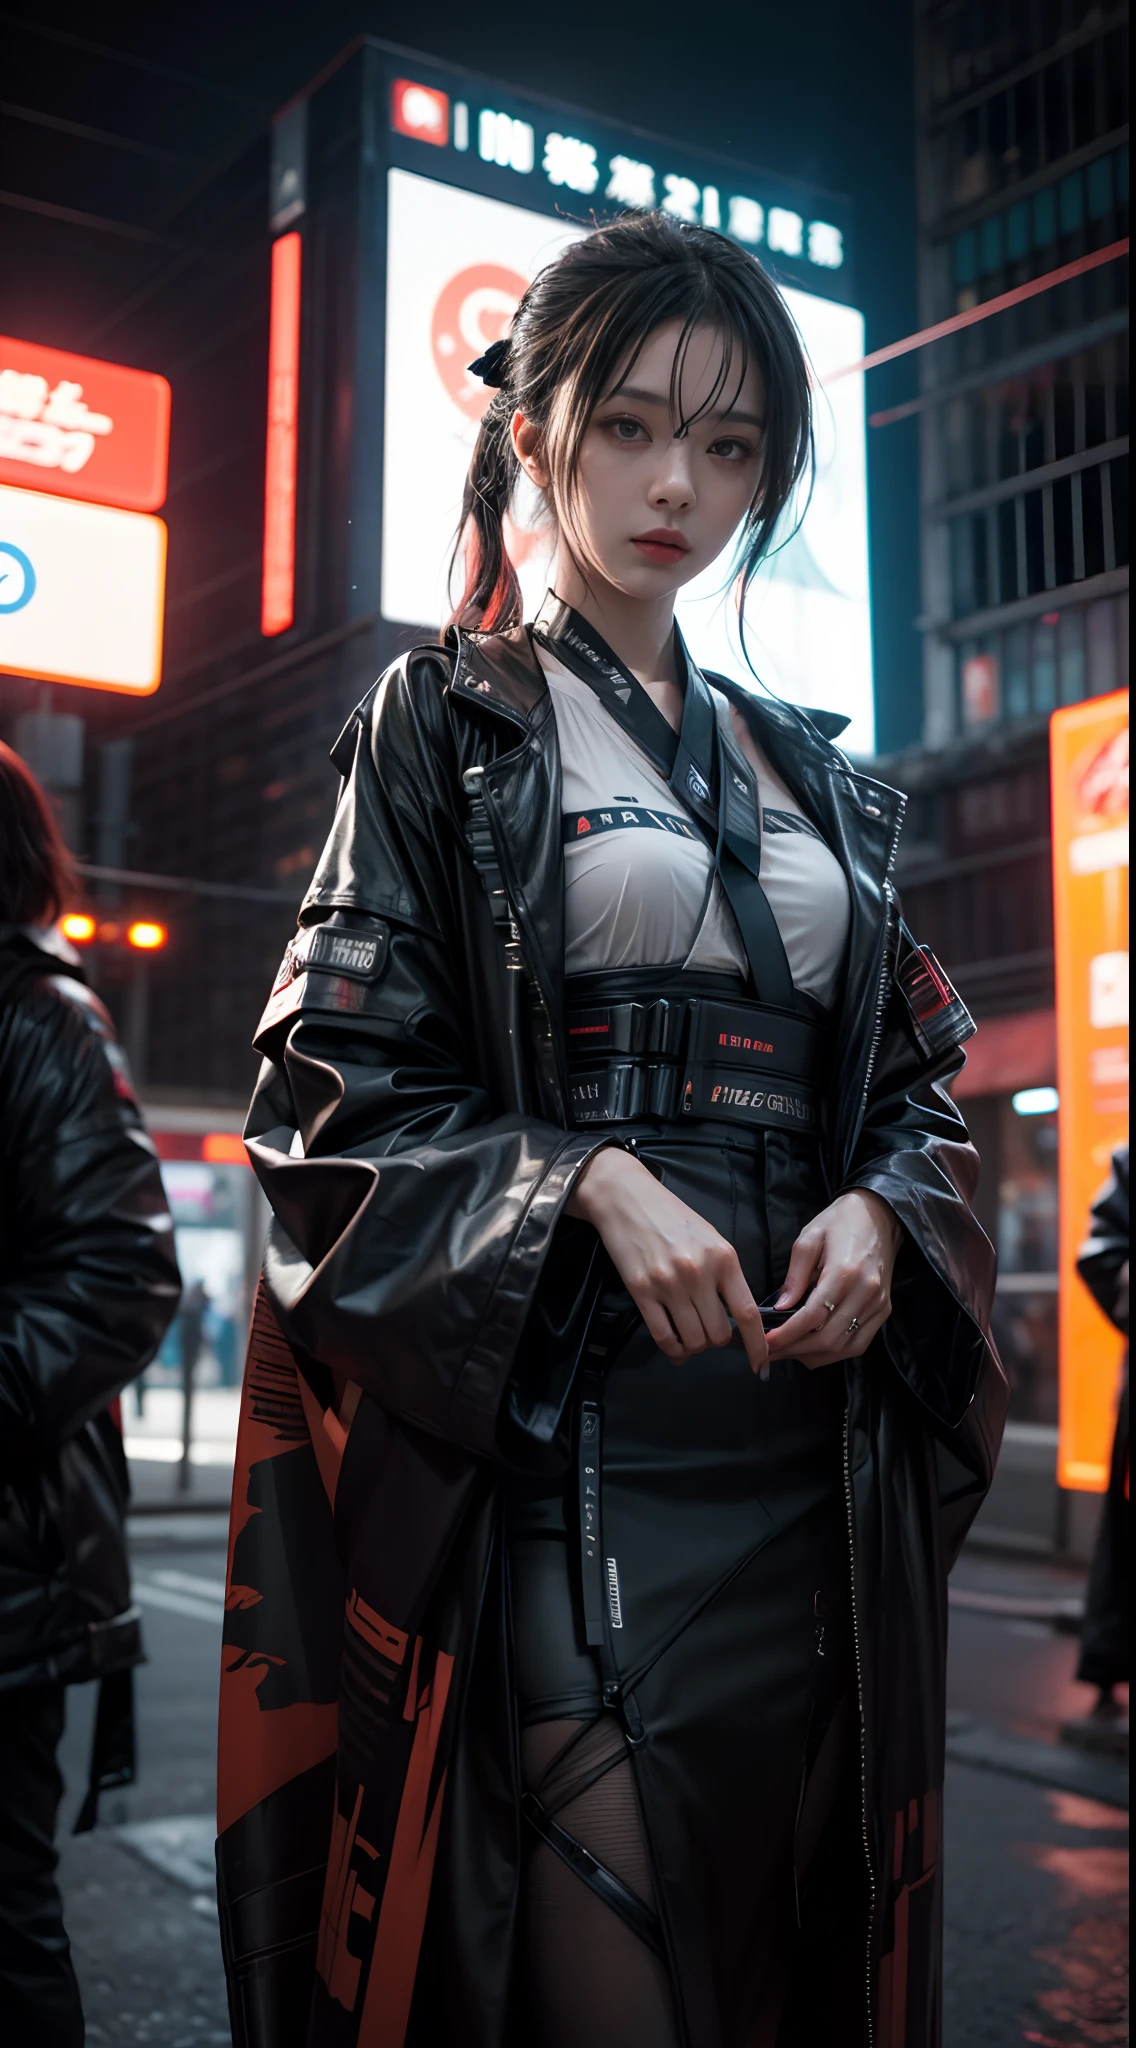 Ein Foto einer Frau, die in eine futuristische Cyberpunk-Welt eintaucht, während sie in einem Hightech-Kimono Cosplay betreibt, nachts mit Neonlicht aufgenommen, mit einer spiegellosen Kamera mit Weitwinkelobjektiv, und ein kantiger Cyberpunk-Fotografiestil.